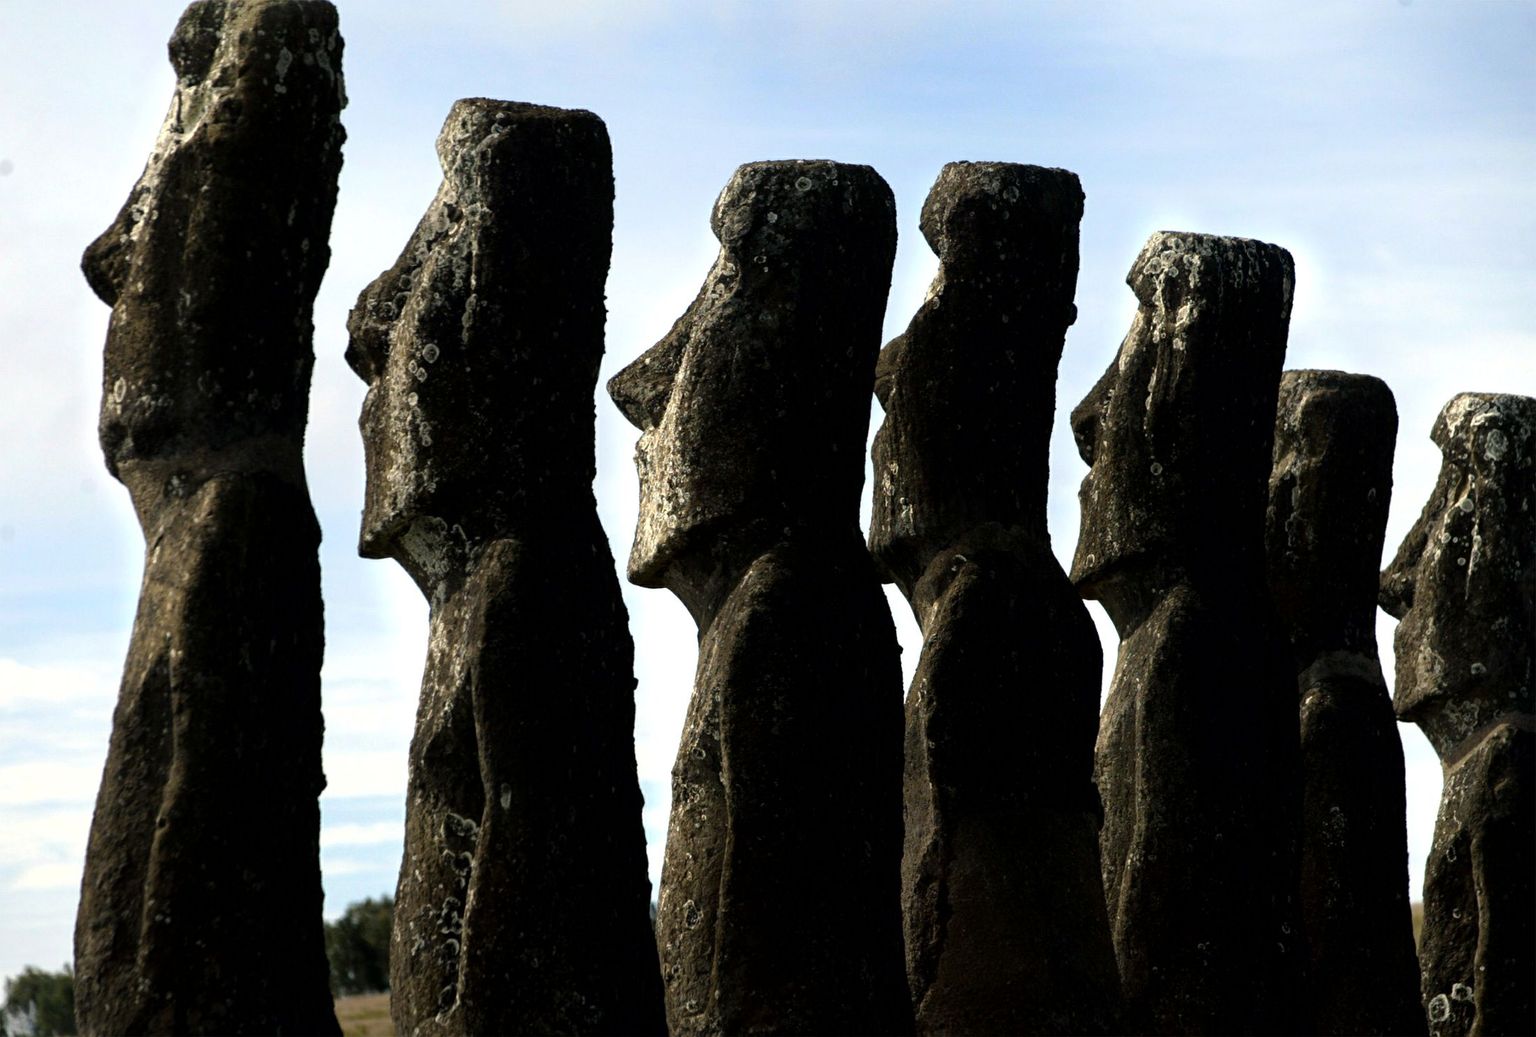 Lihavõttesaare moai kujud